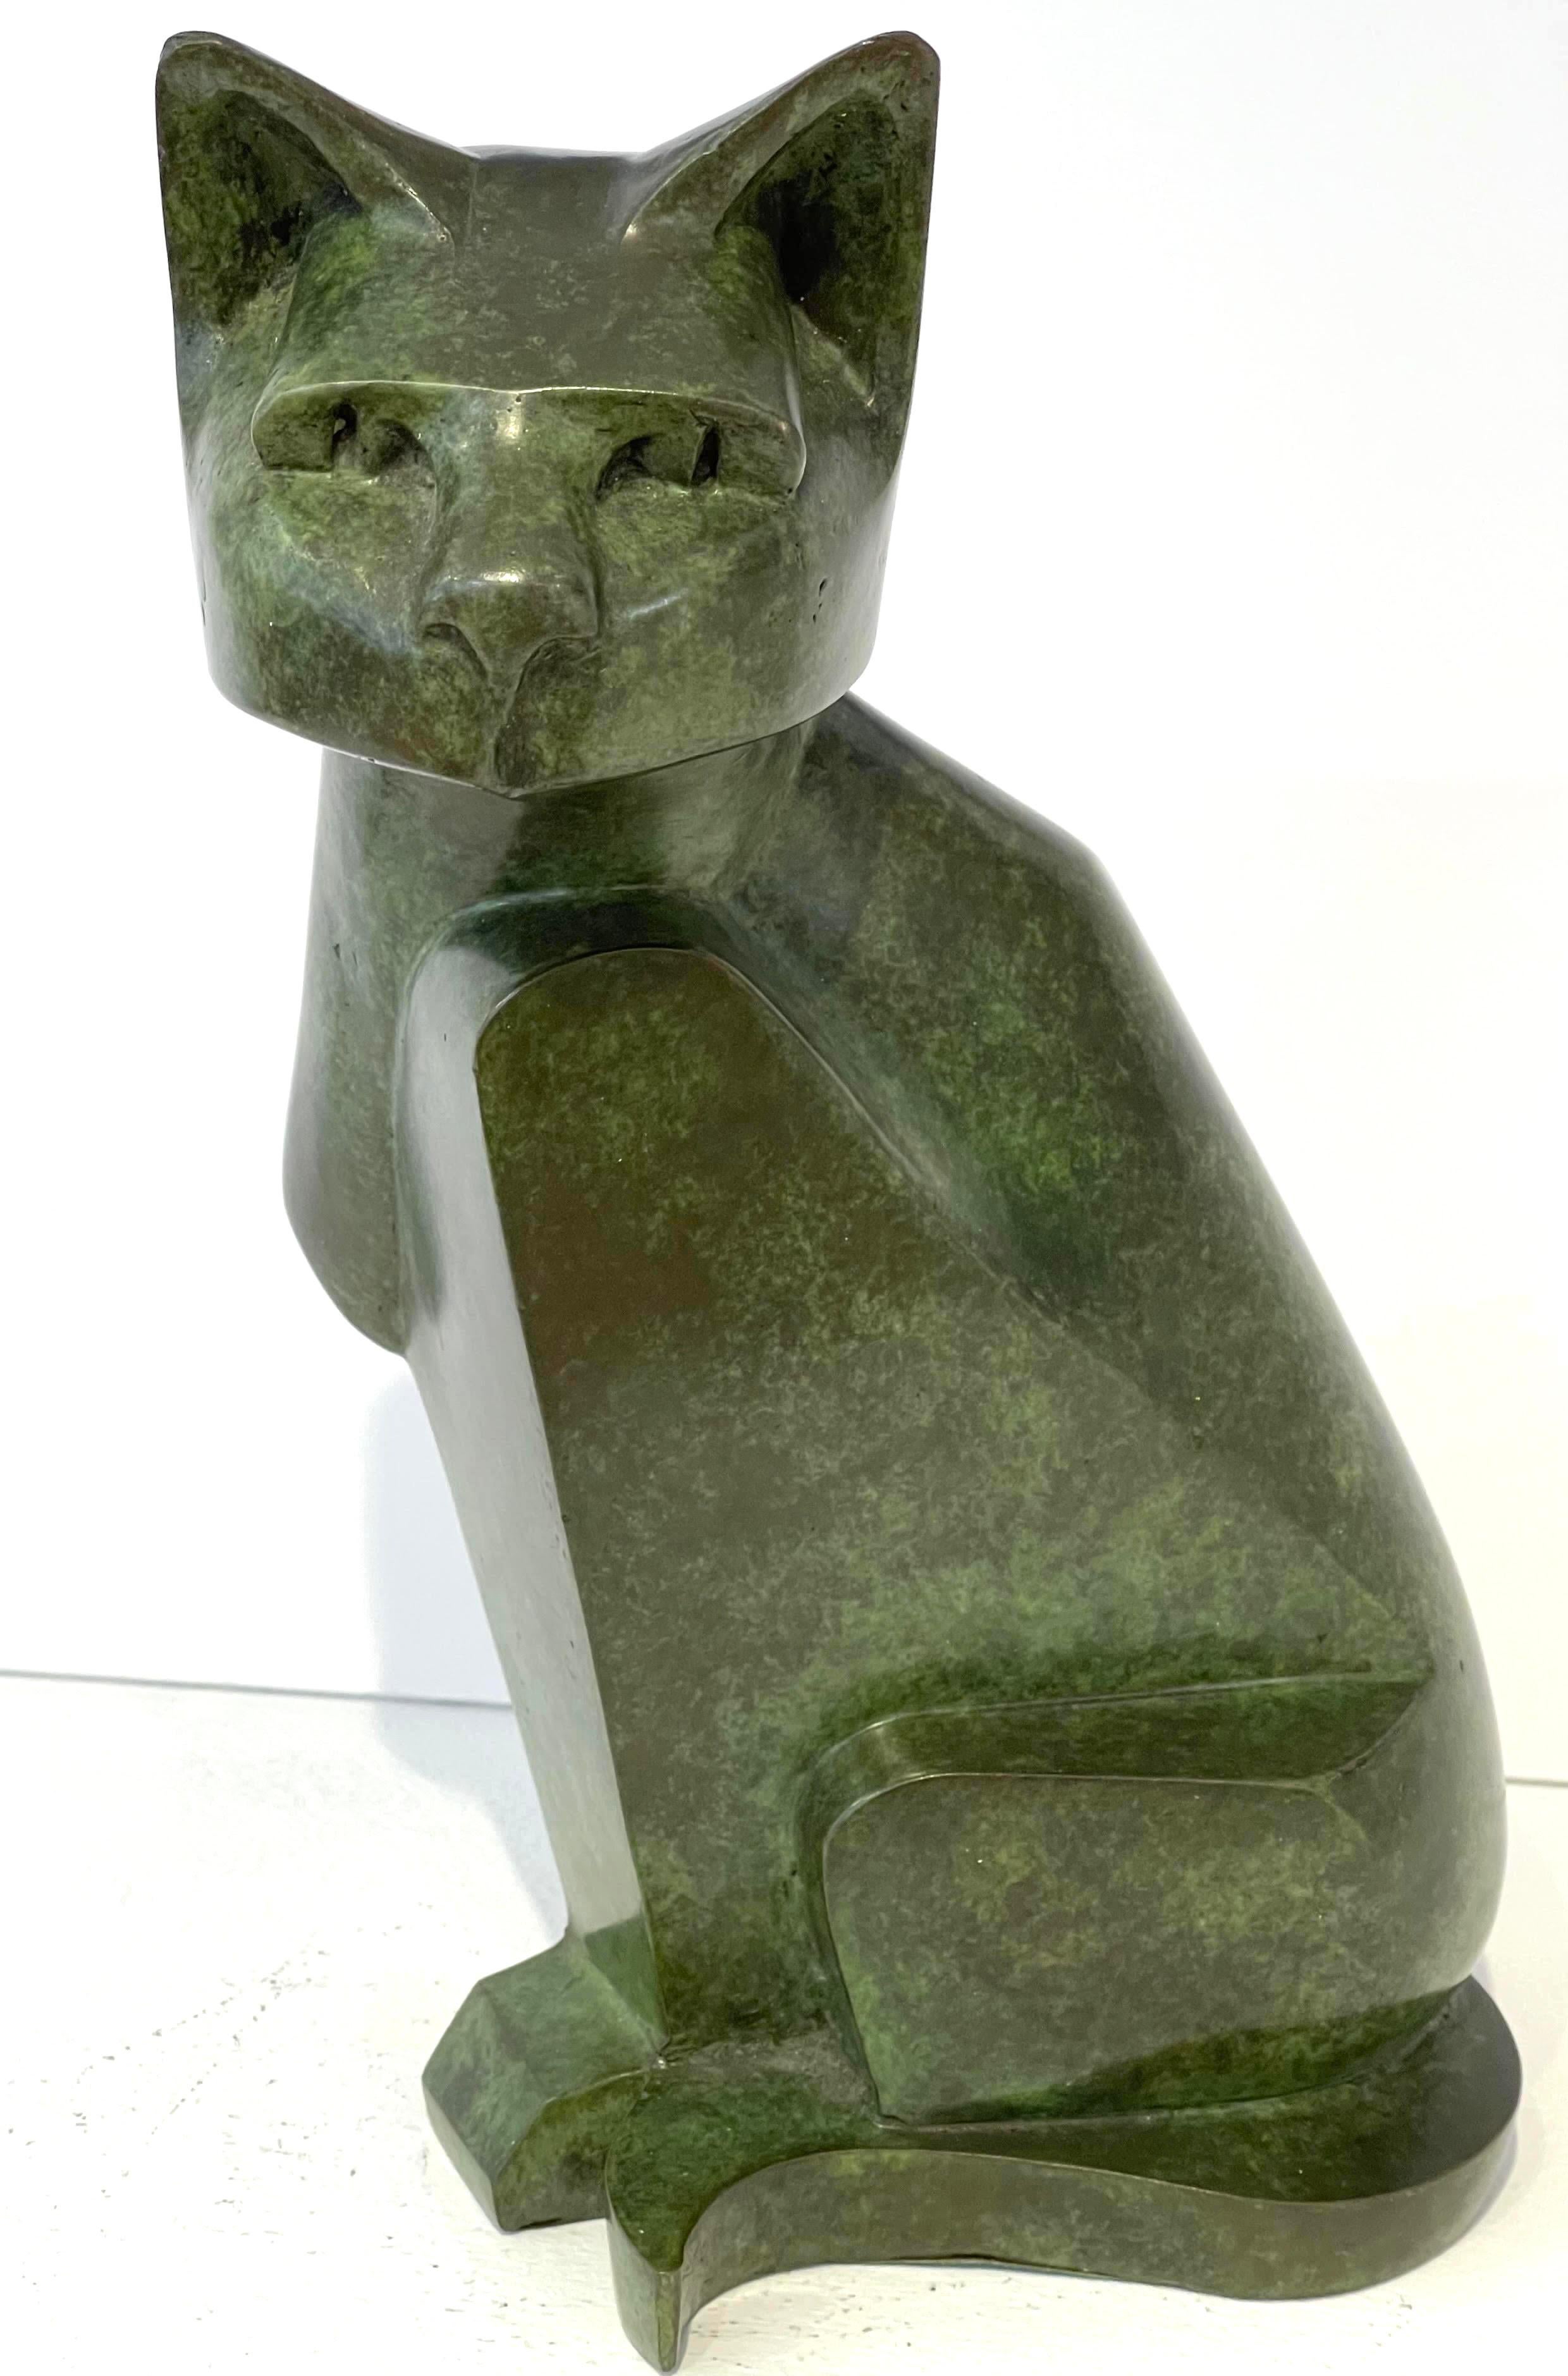 CAT Catalogue Raisonne Ref: Knight, CR-406 gegossene Bronzeskulptur eines famosen Künstlers – Sculpture von Gerald Laing